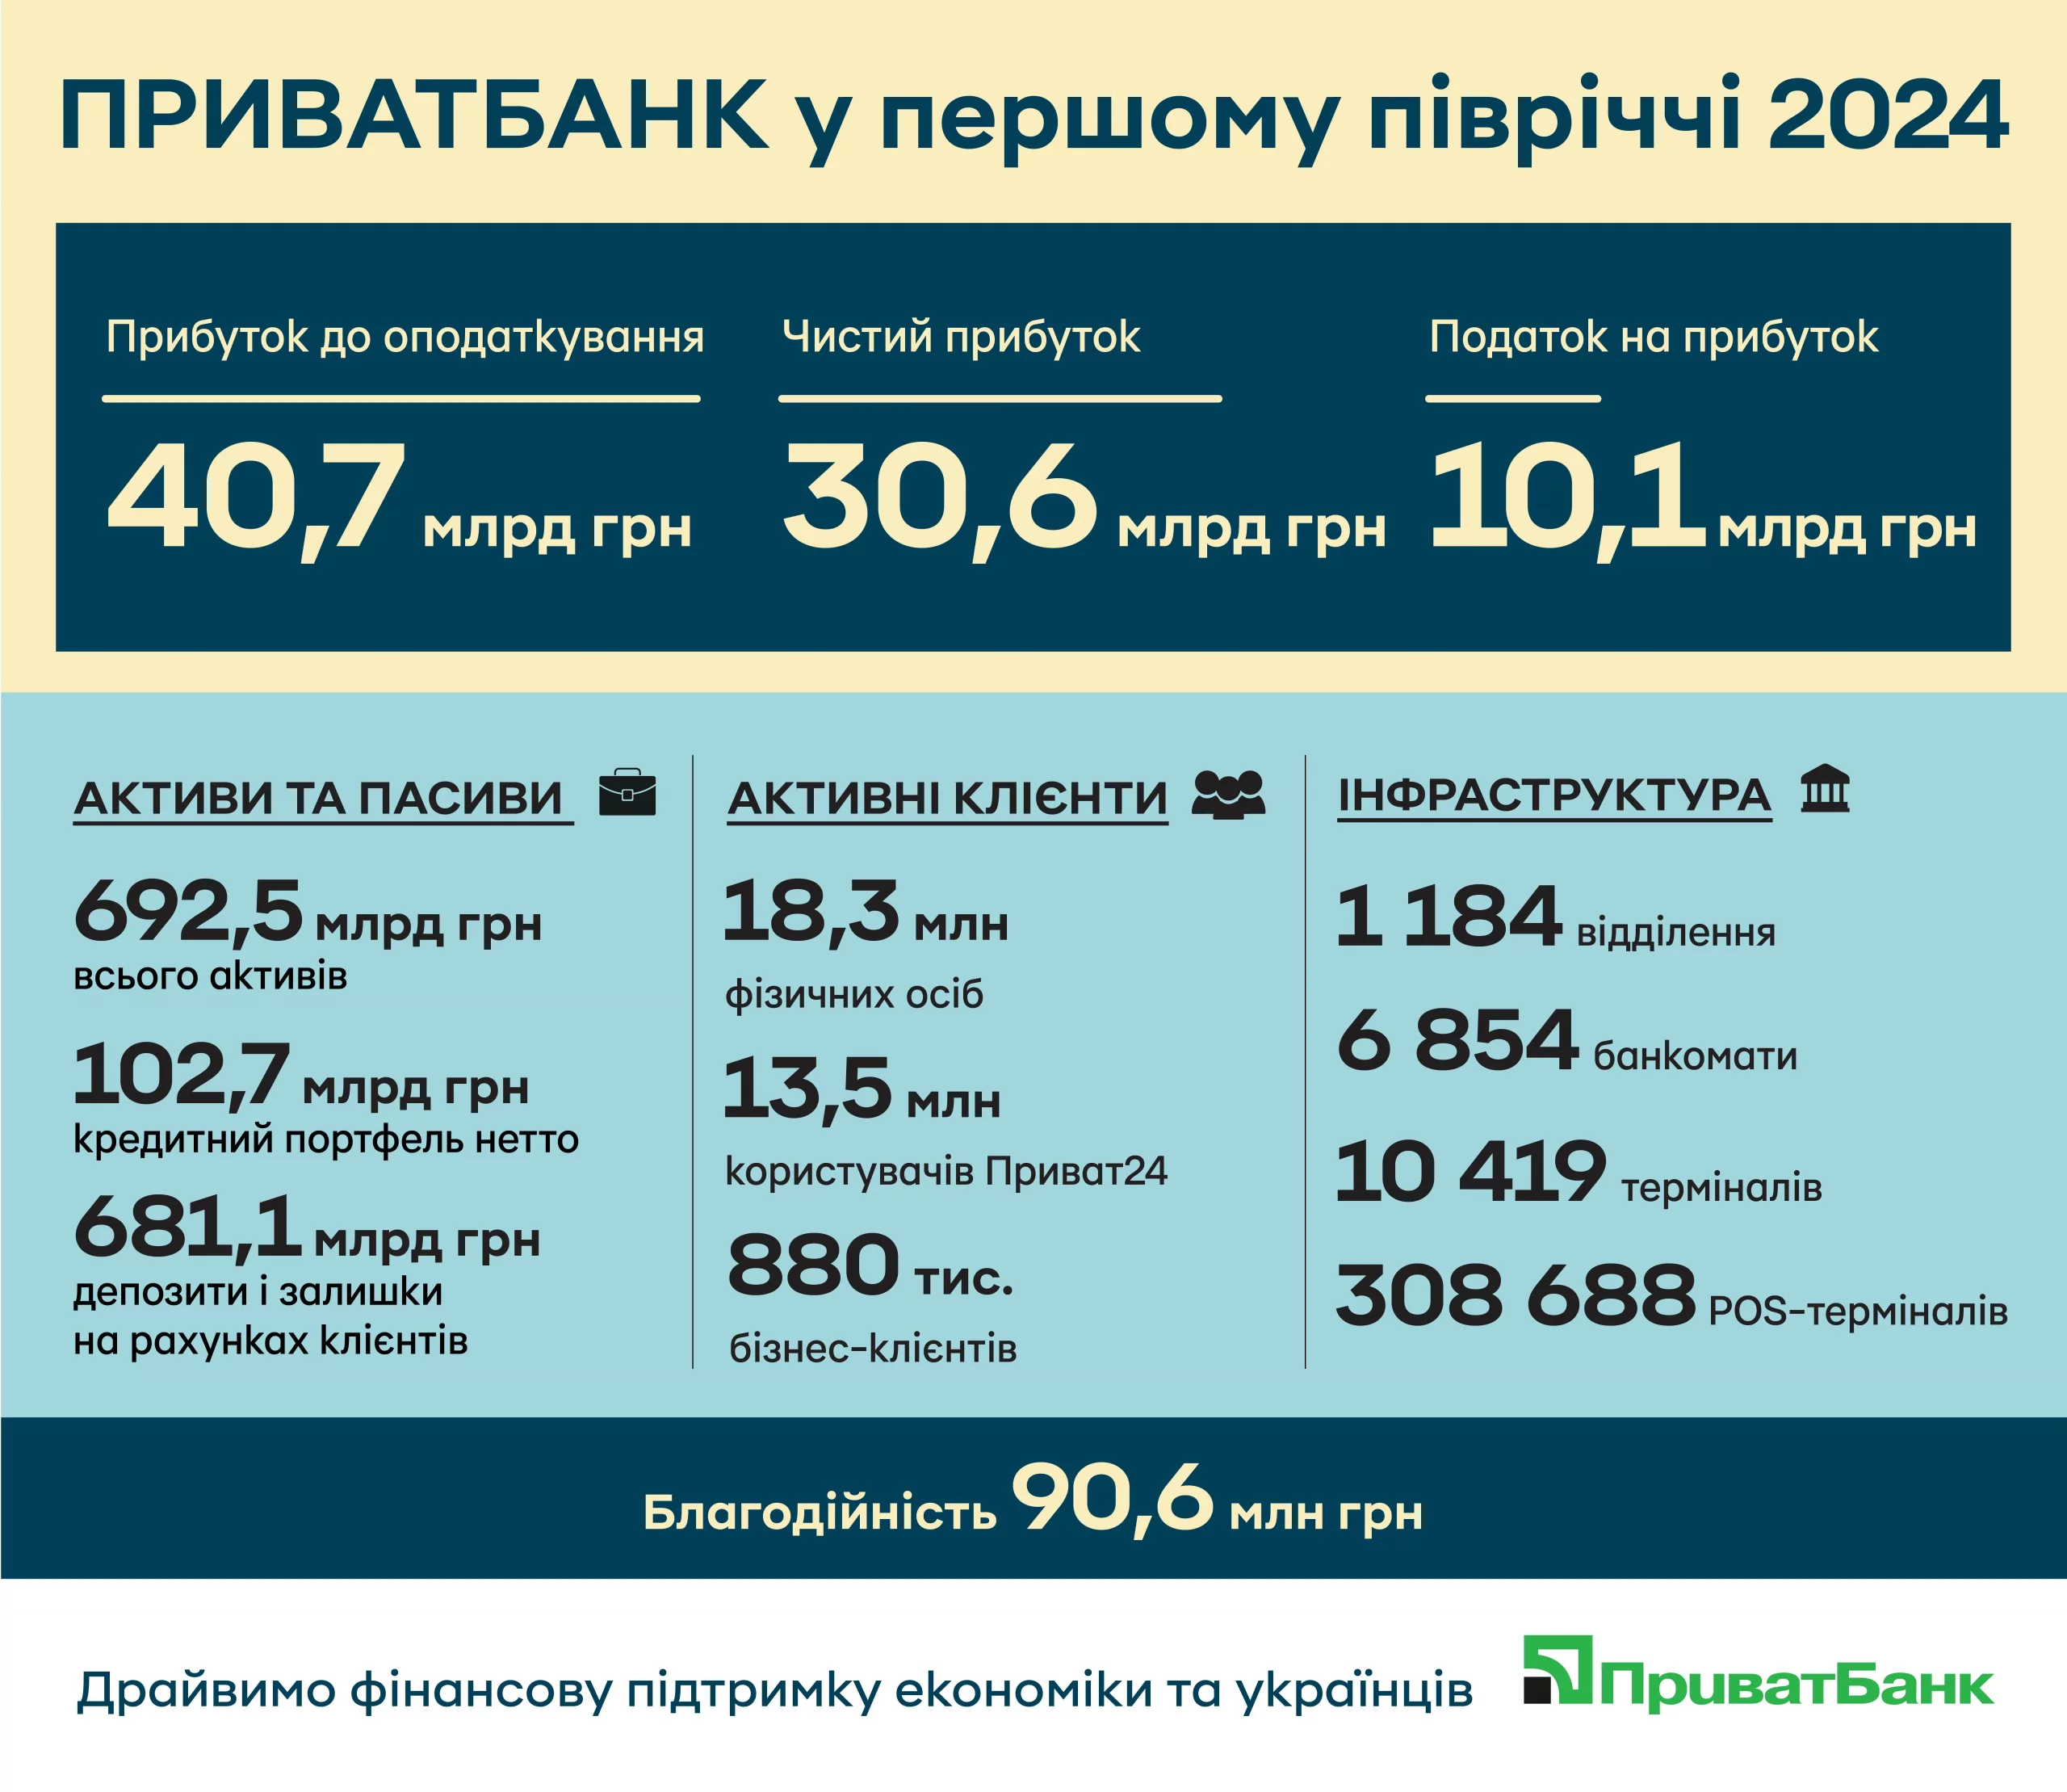 Результати роботи ПриватБанку в першому півріччі 2024-го